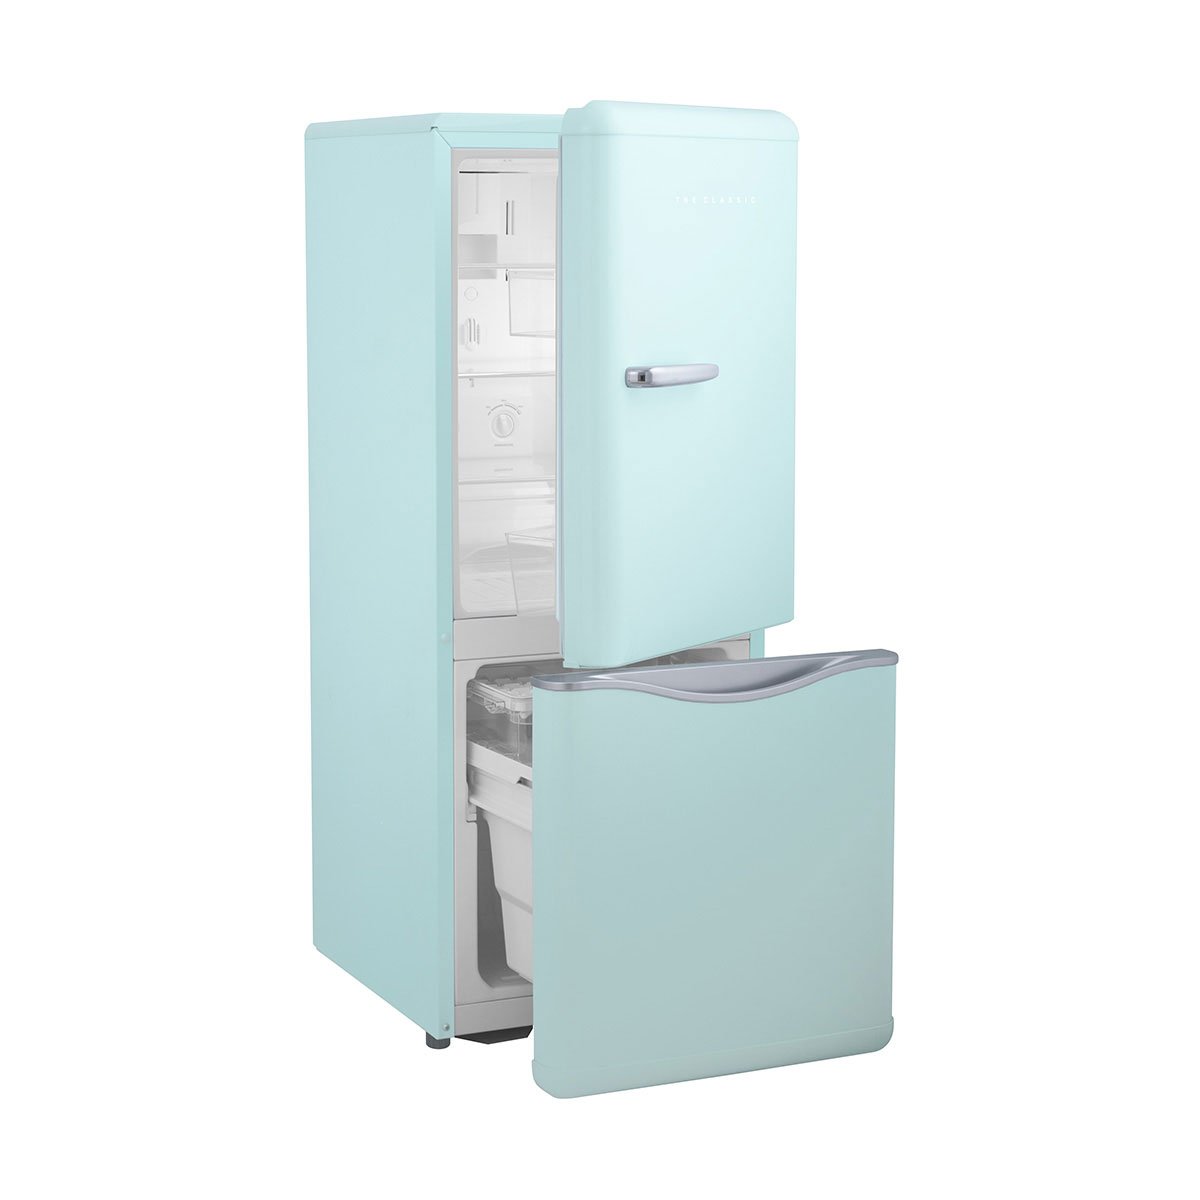 Refrigerador Daewoo Bottom Mount 5 Pies Menta con Acabados en Cromo